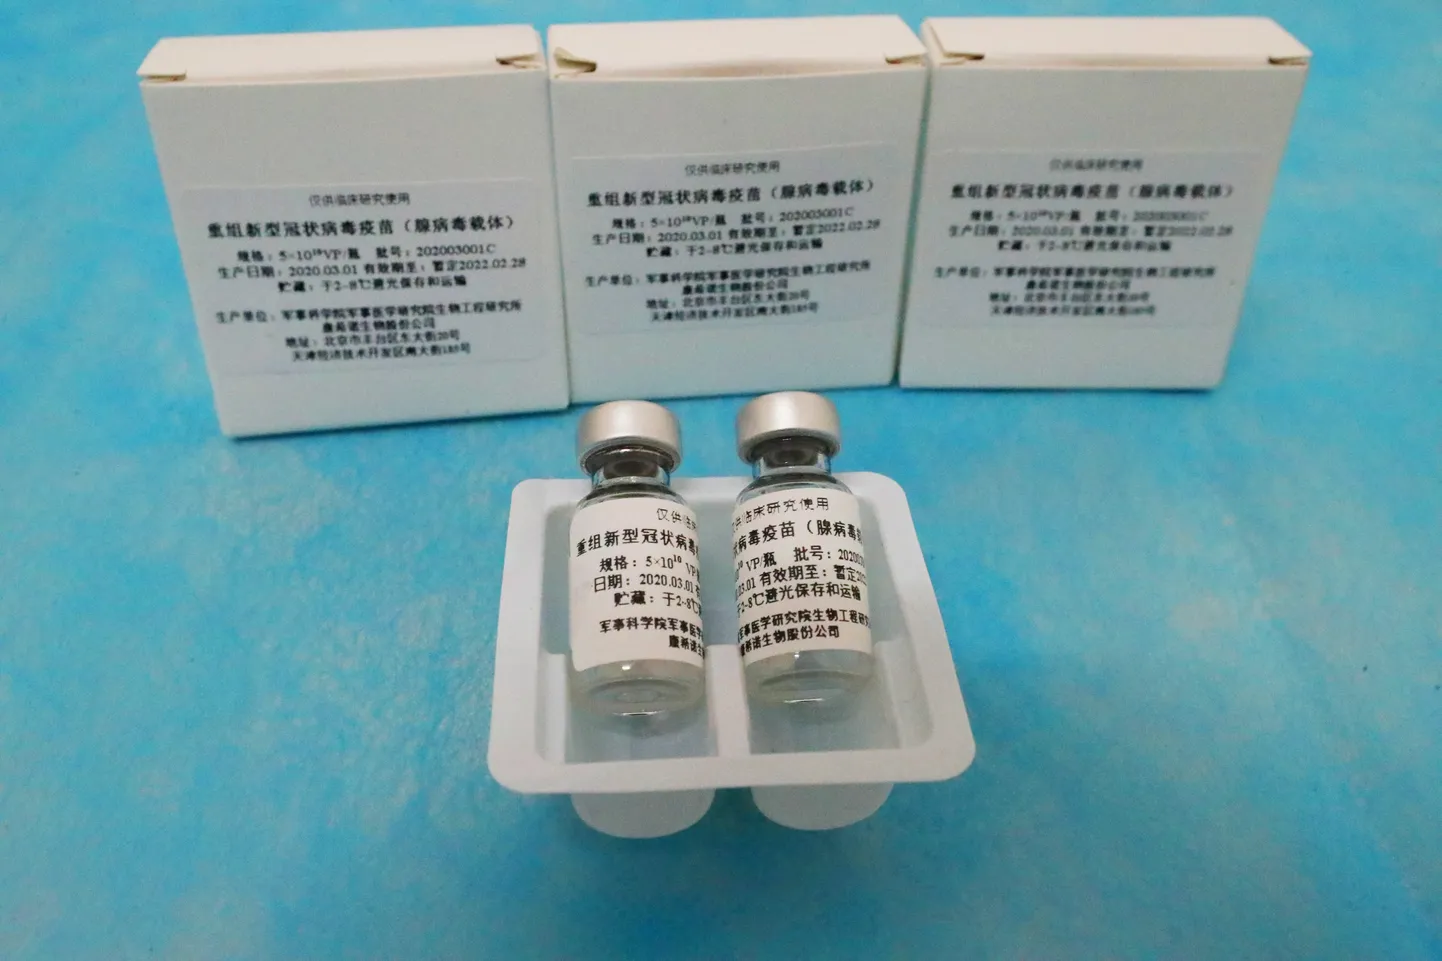 Hiina vaktsiin